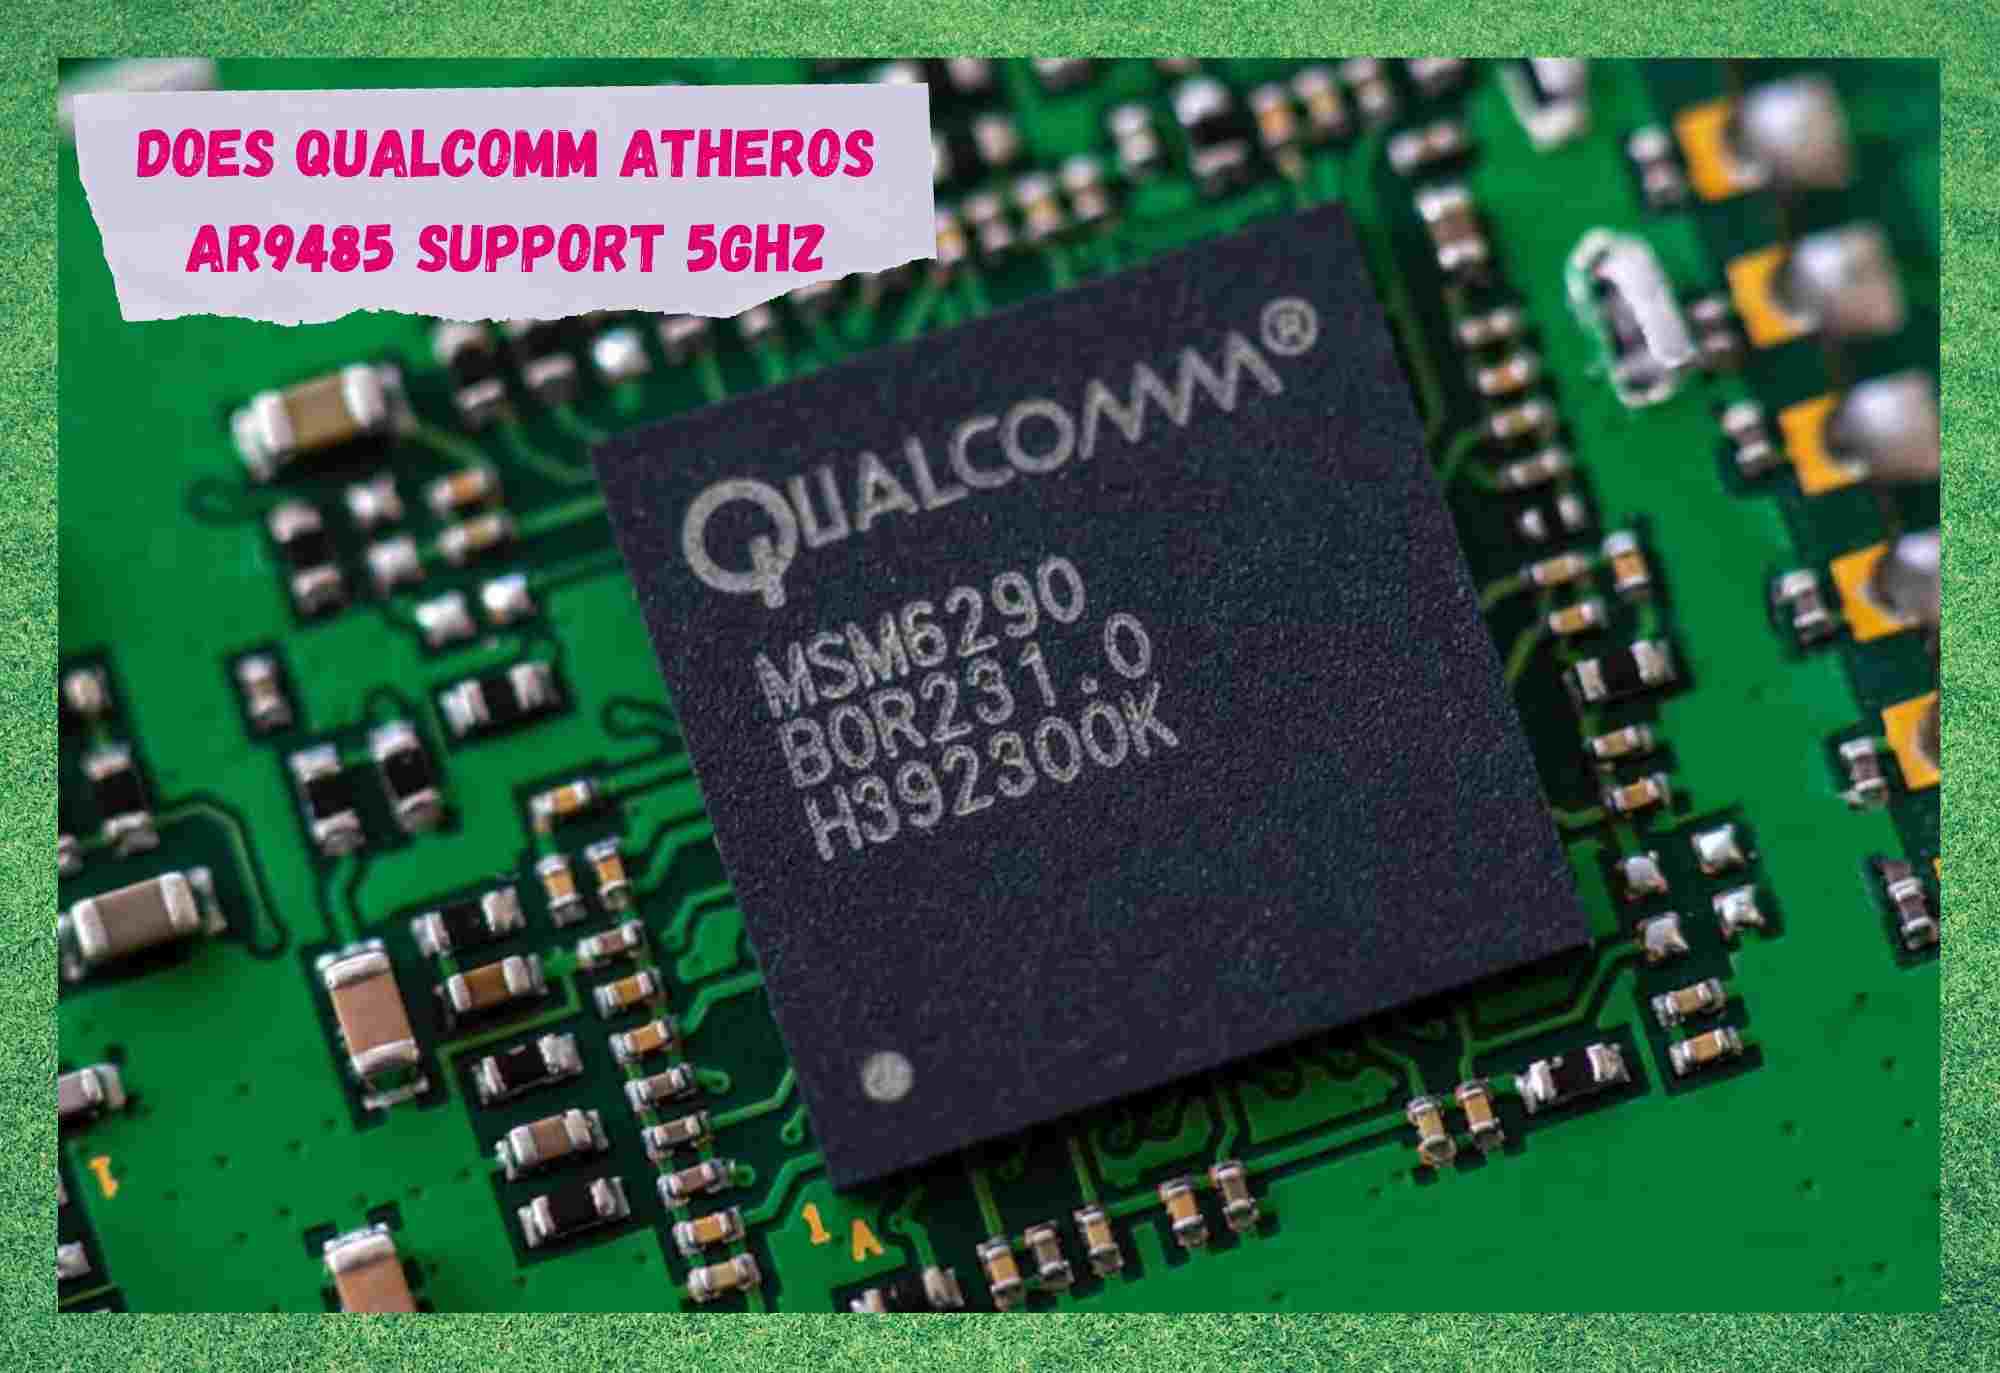 Podporuje Qualcomm Atheros AR9485 5GHz?